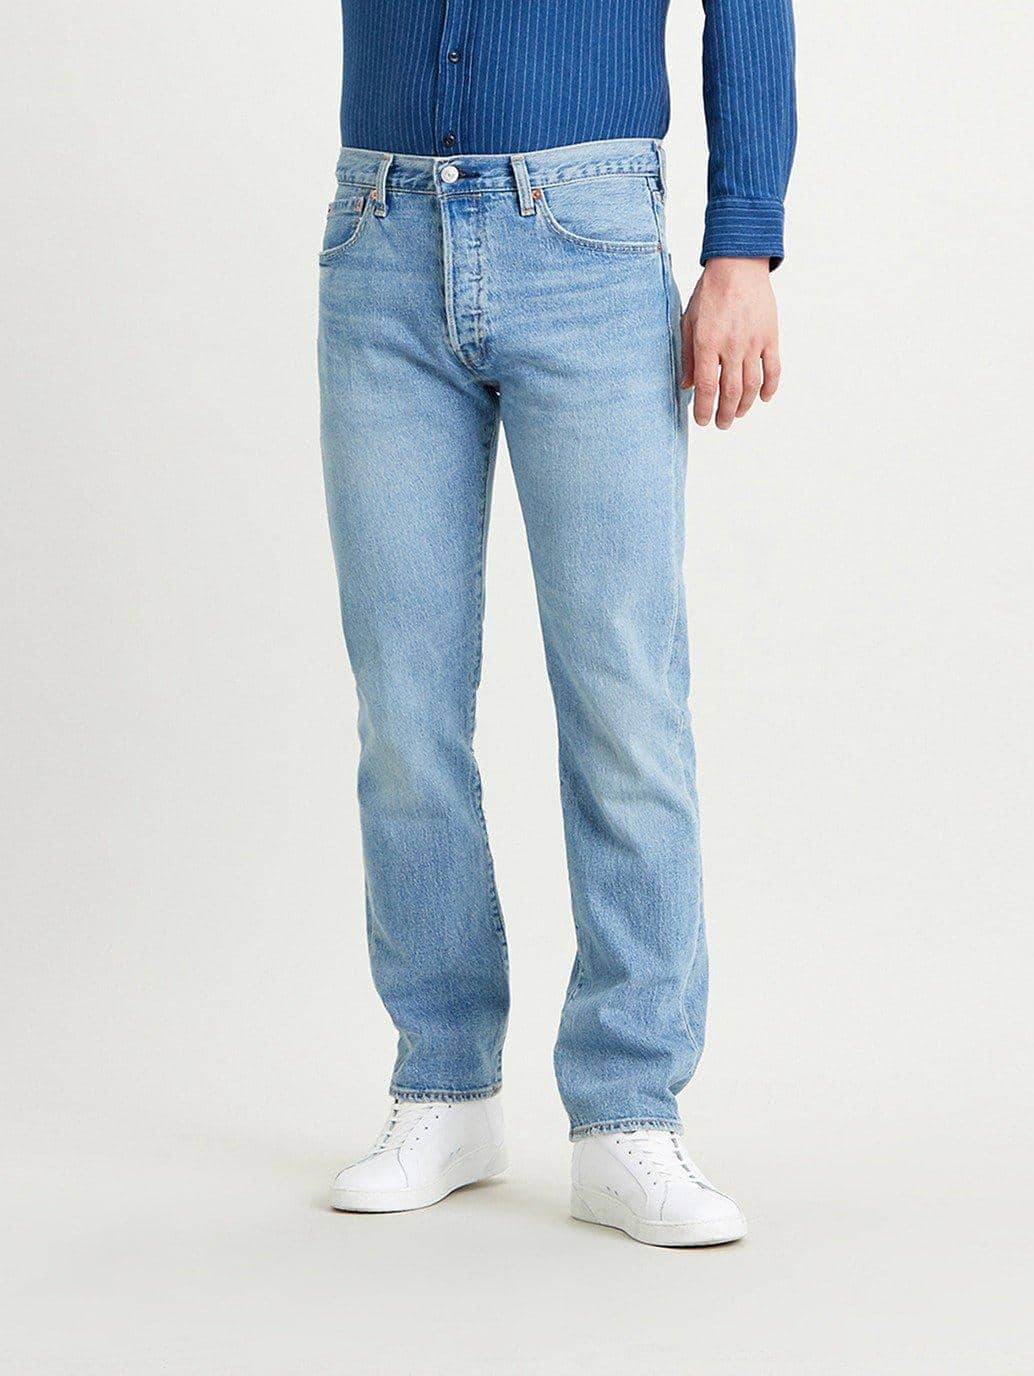 Levi's® MY 501® Original Fit Jeans for Men - 005013108